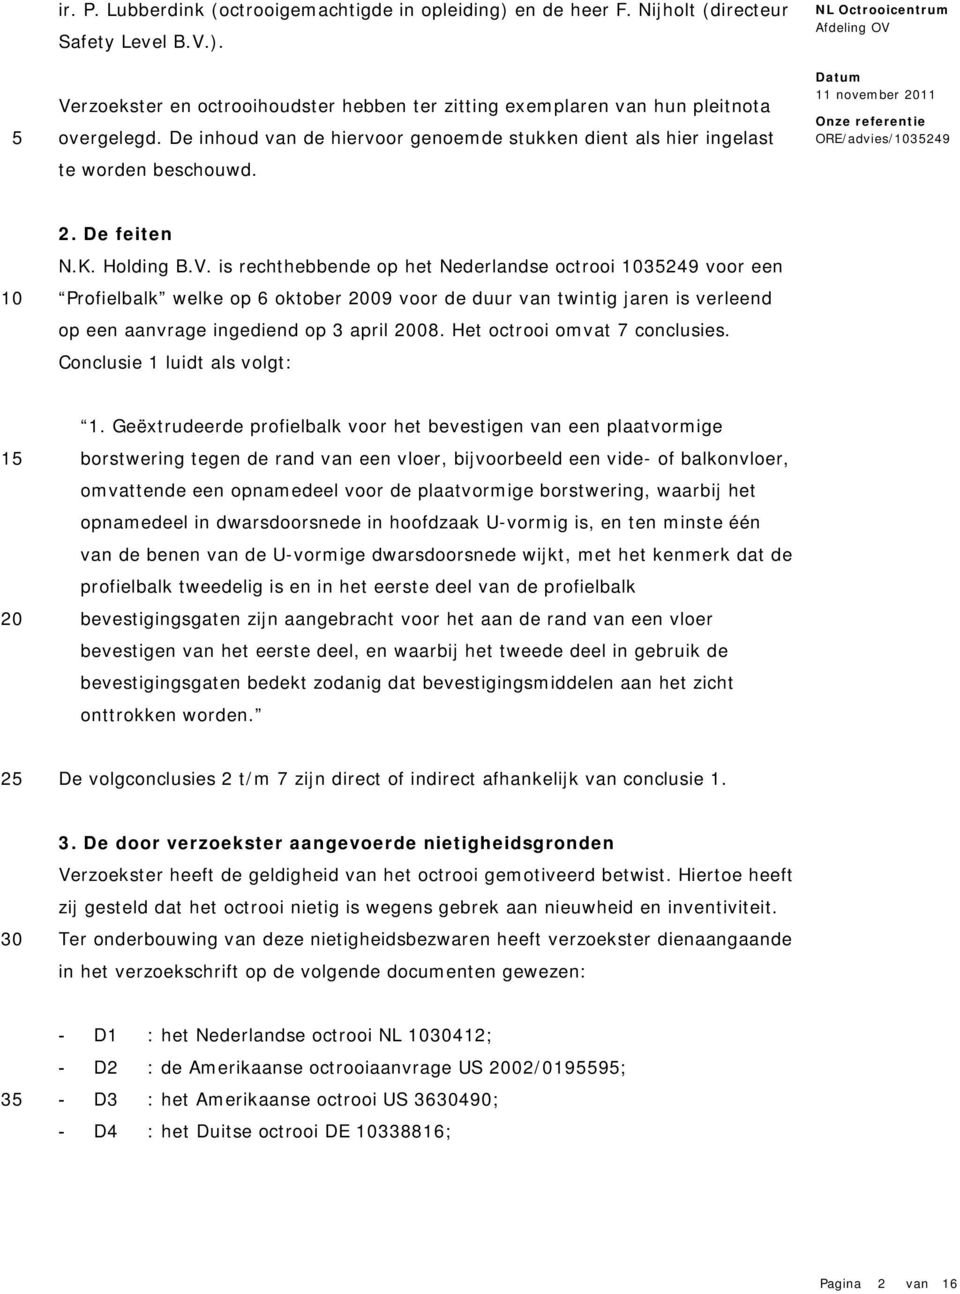 is rechthebbende op het Nederlandse octrooi 249 voor een Profielbalk welke op 6 oktober 09 voor de duur van twintig jaren is verleend op een aanvrage ingediend op 3 april 08.